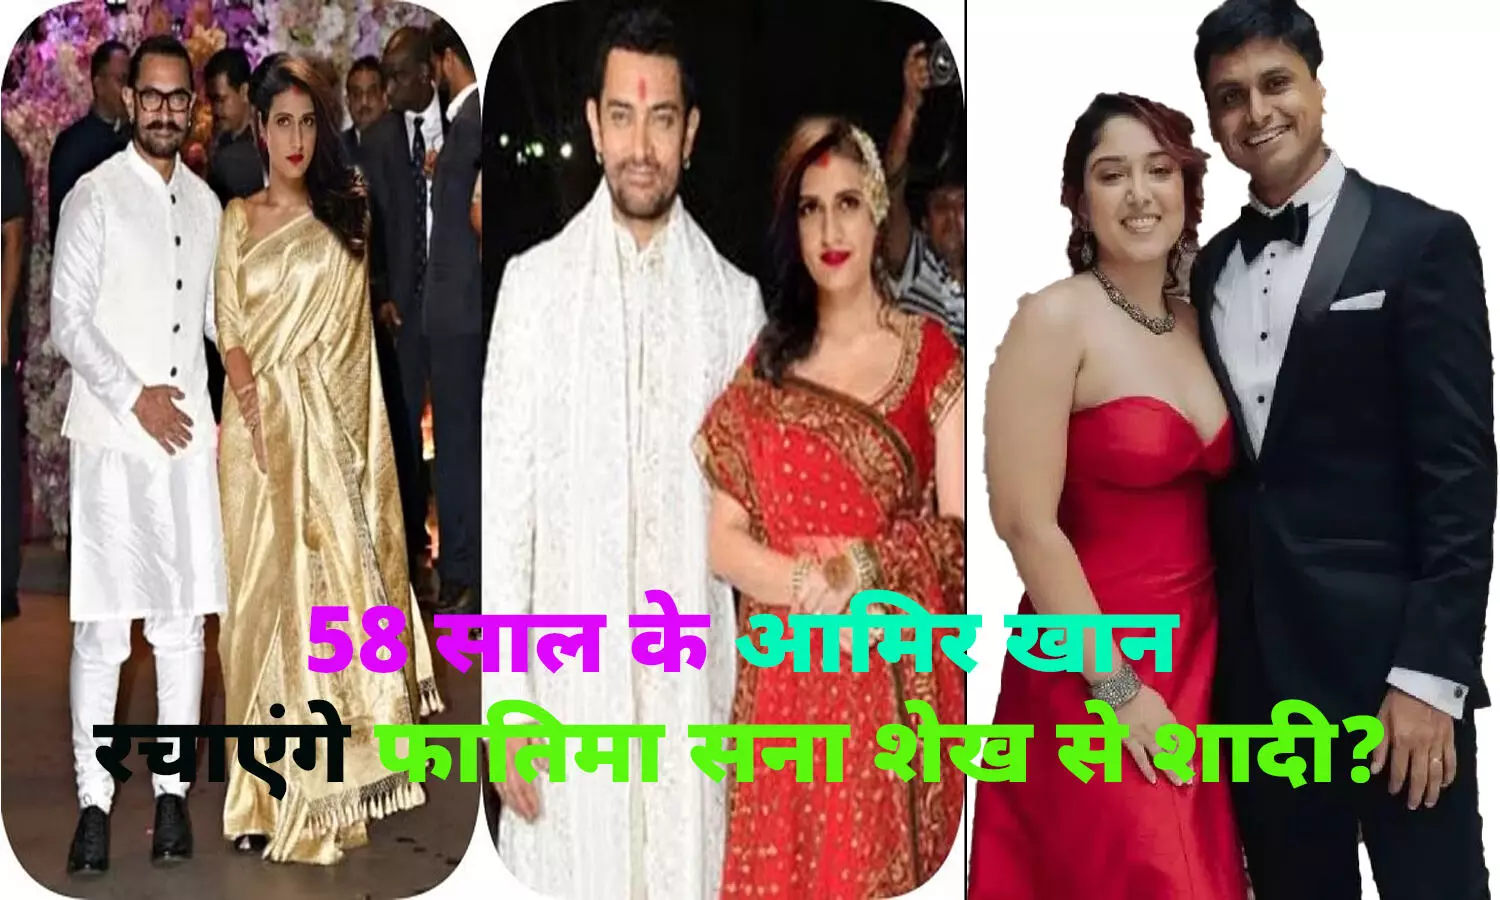 बेटी इरा की शादी के बाद आमिर खान रचाएंगे फातिमा सना शेख से शादी?